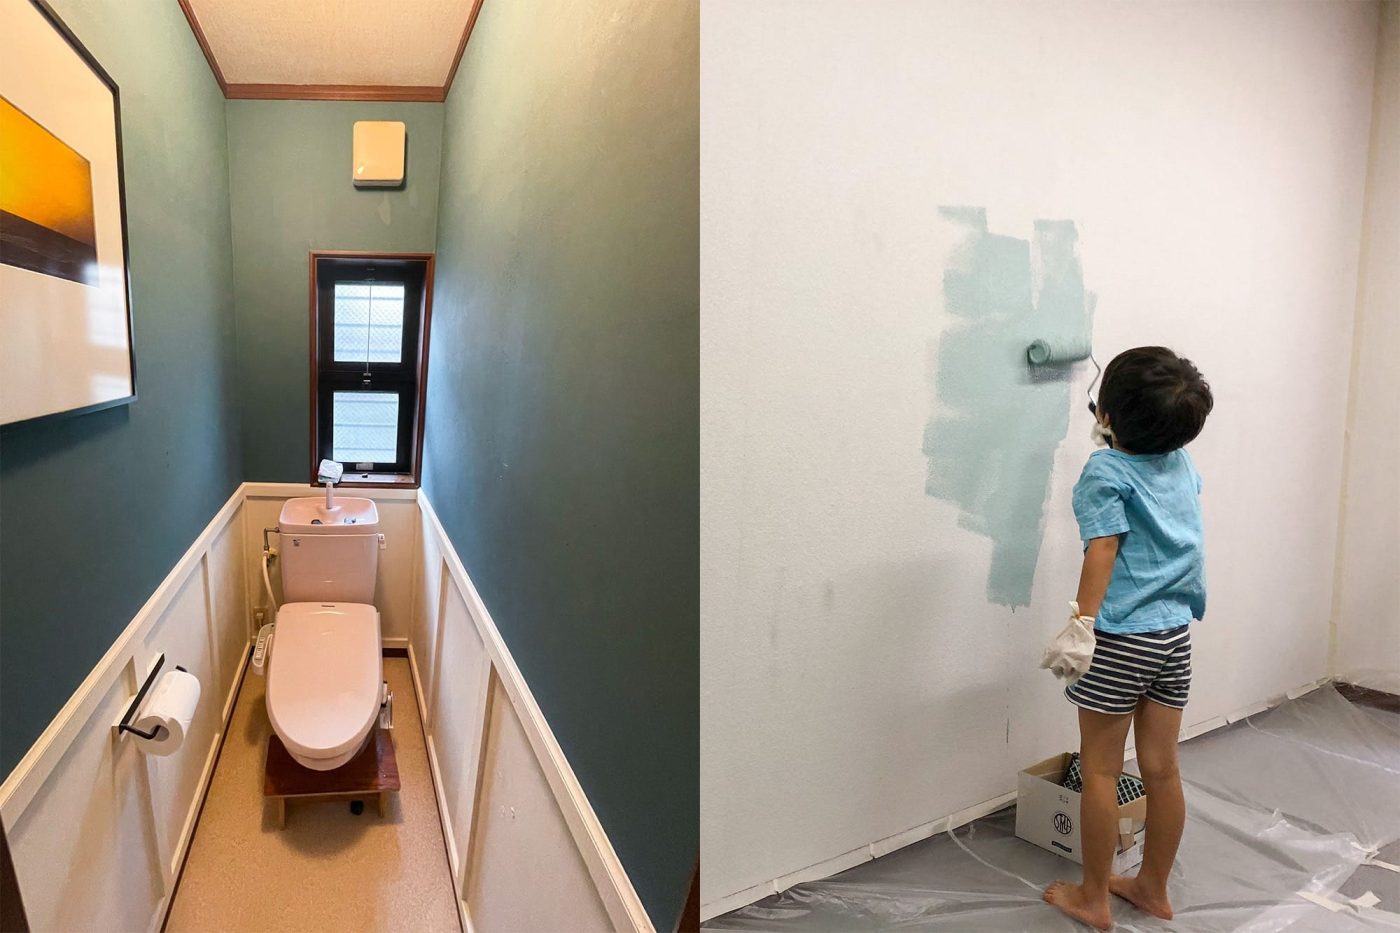 最初に手をつけたのがトイレ壁の塗装（左）。ちょっと雰囲気が好きじゃないから、塗ってみよう！と軽い気持ちでトライしました。そこから子供たちと一緒に、他の部屋の塗装を楽しむように（右）。